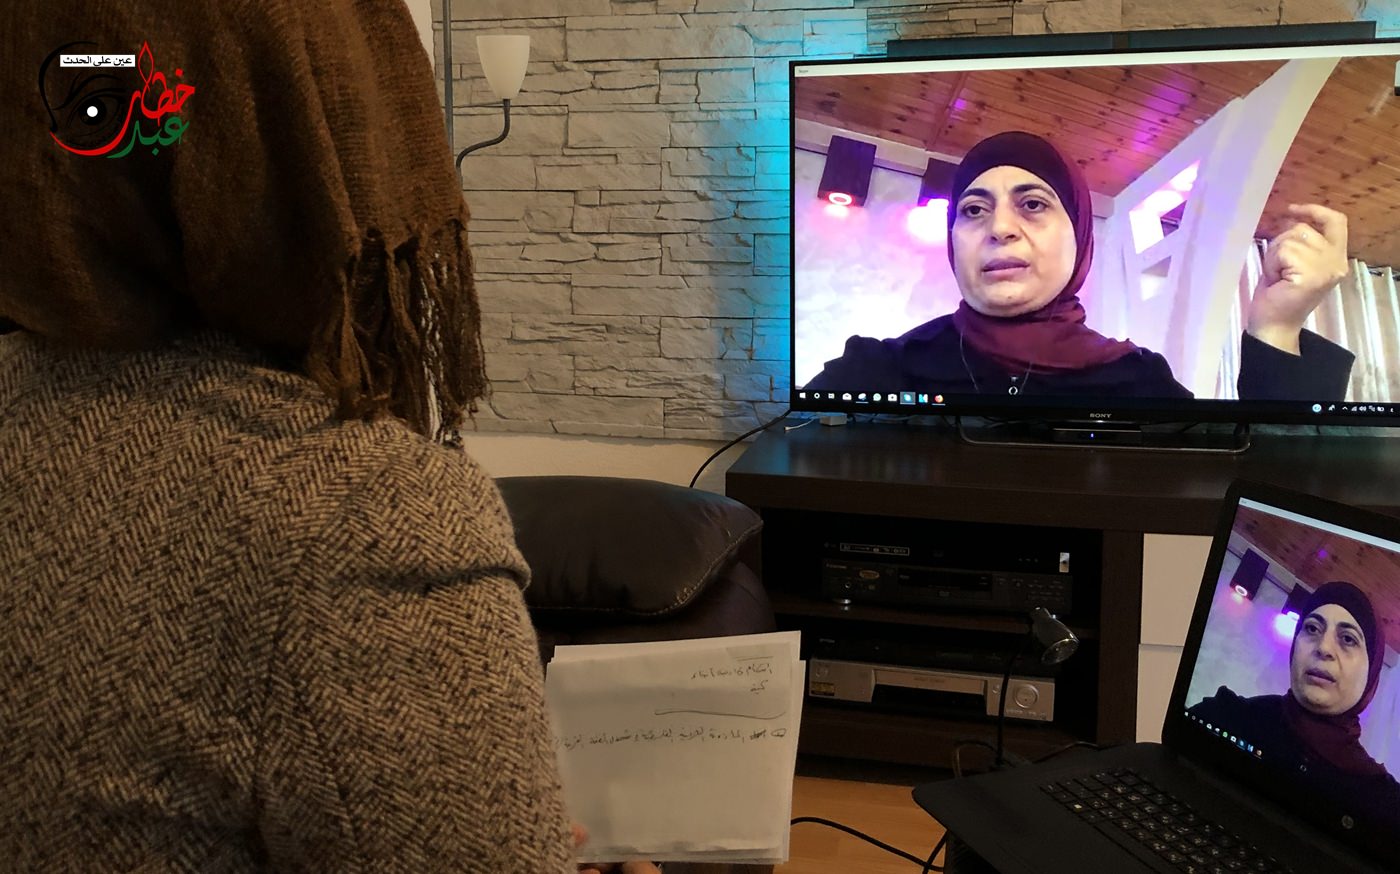 بانوراما برلين || حلقة مع السيدة فداء دراغمة أول مأذونة شرعية في شمال الضفة الغربية - فلسطين